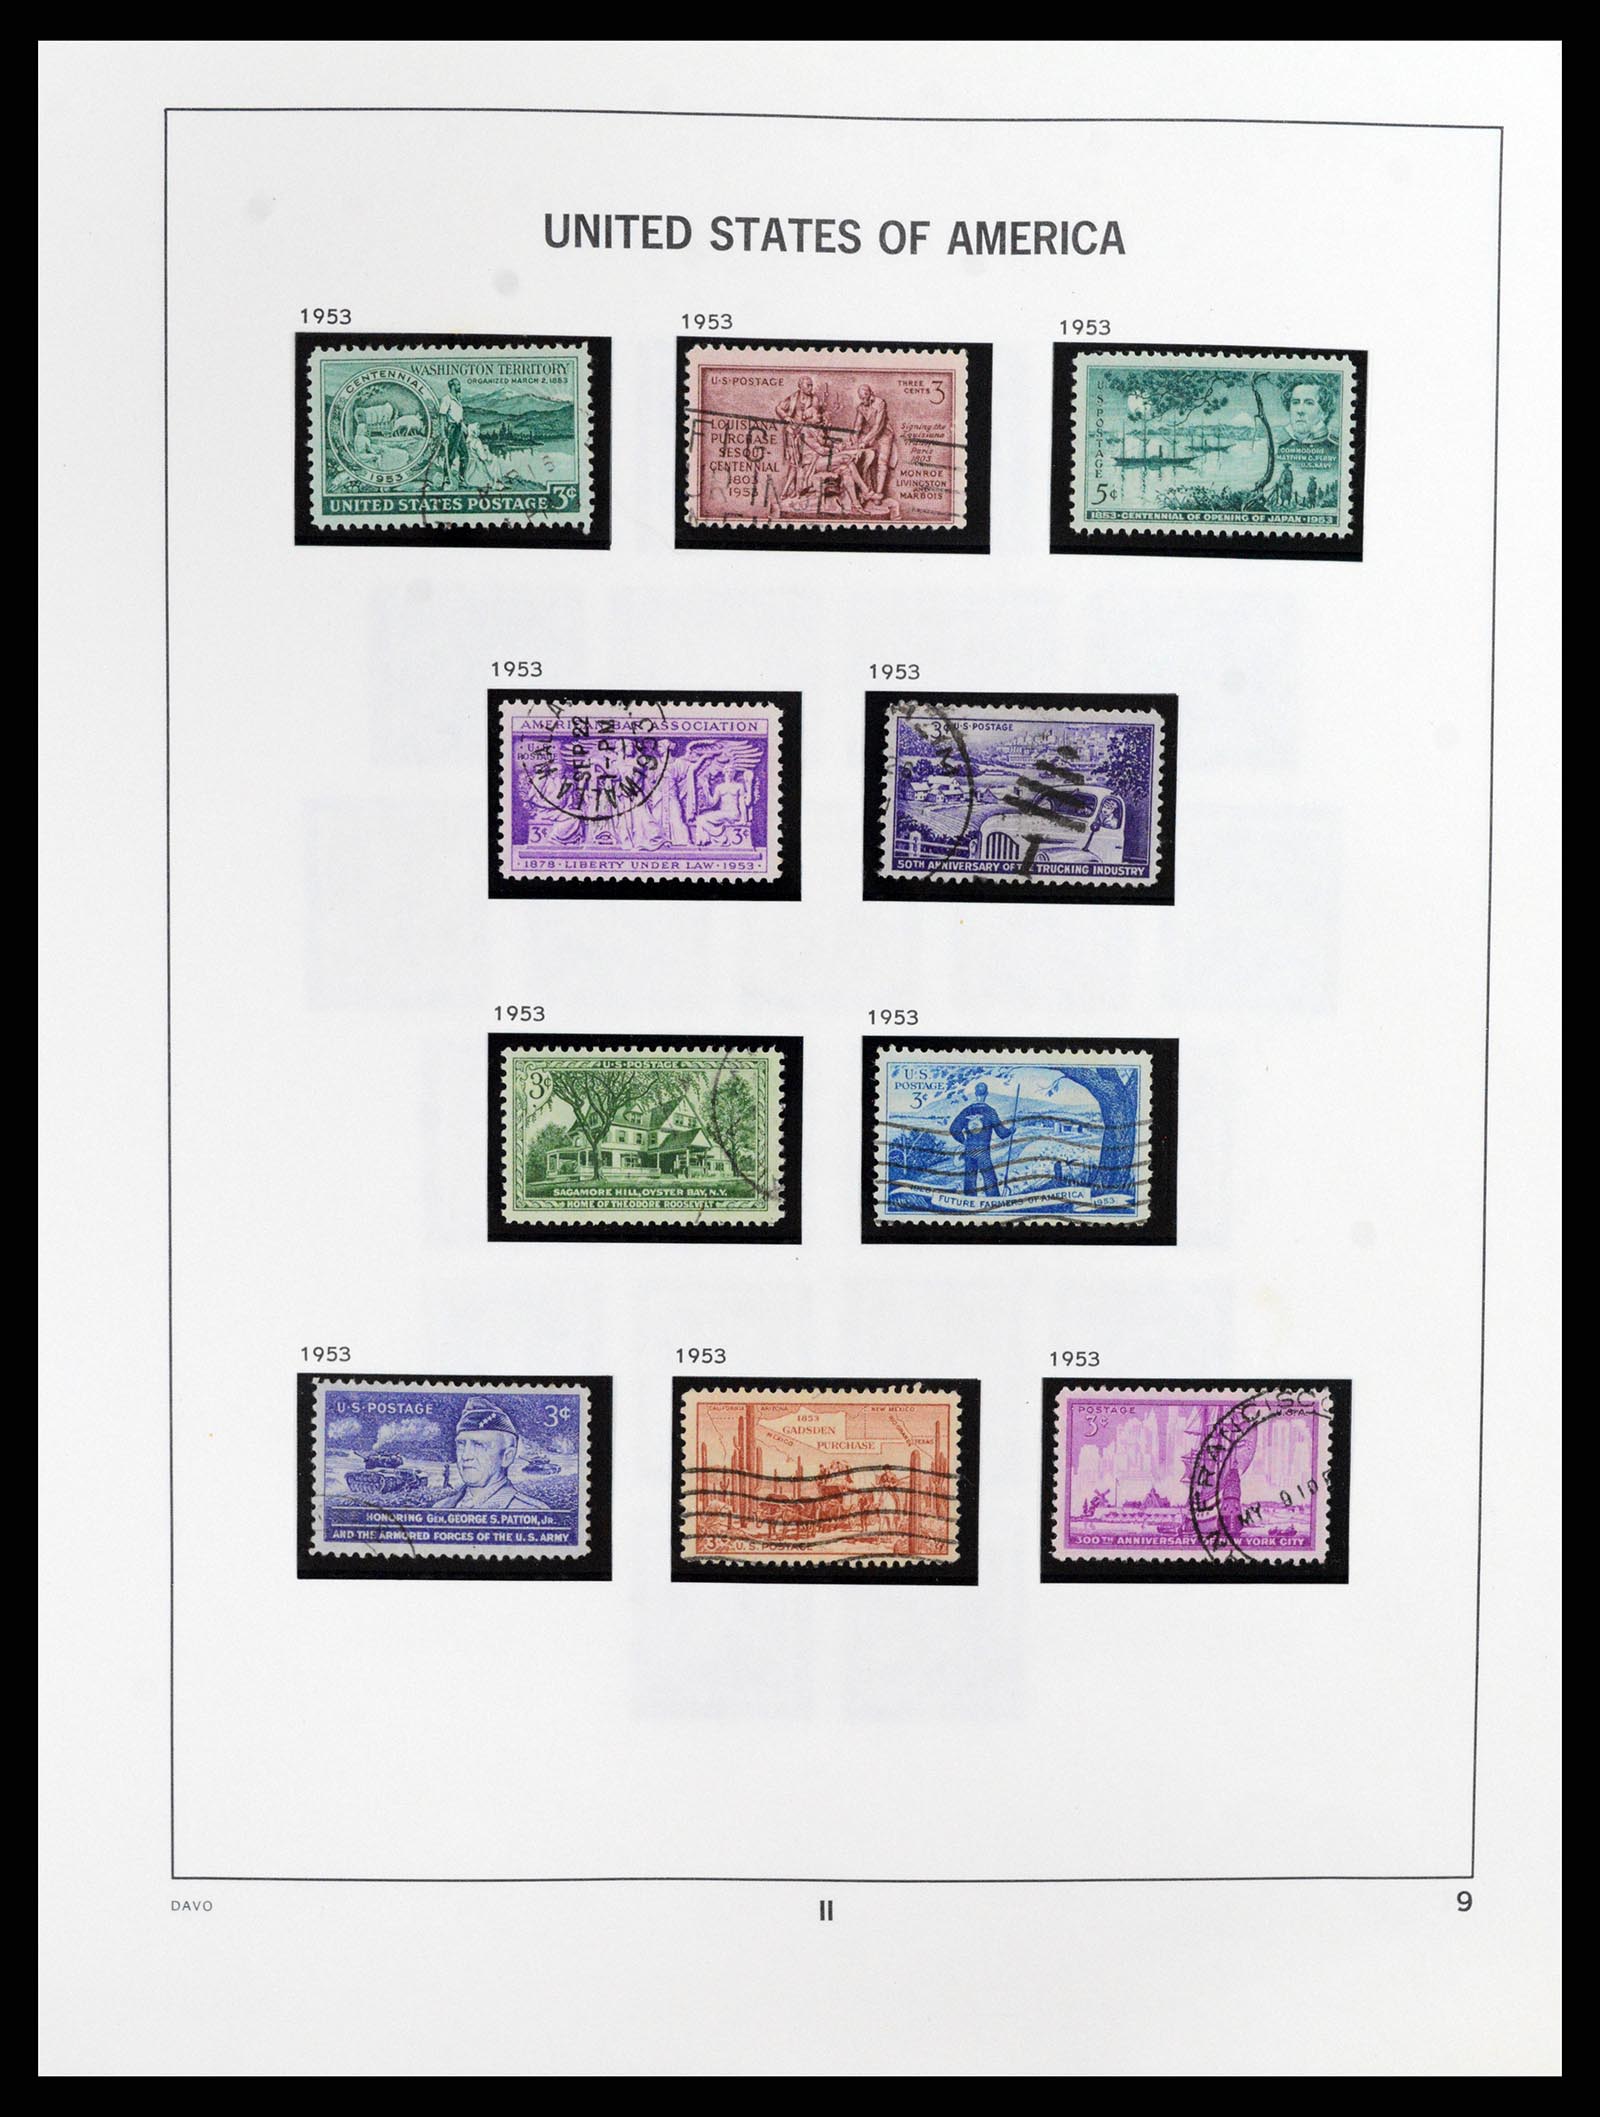 37357 009 - Stamp collection 37357 USA 1945-2009.